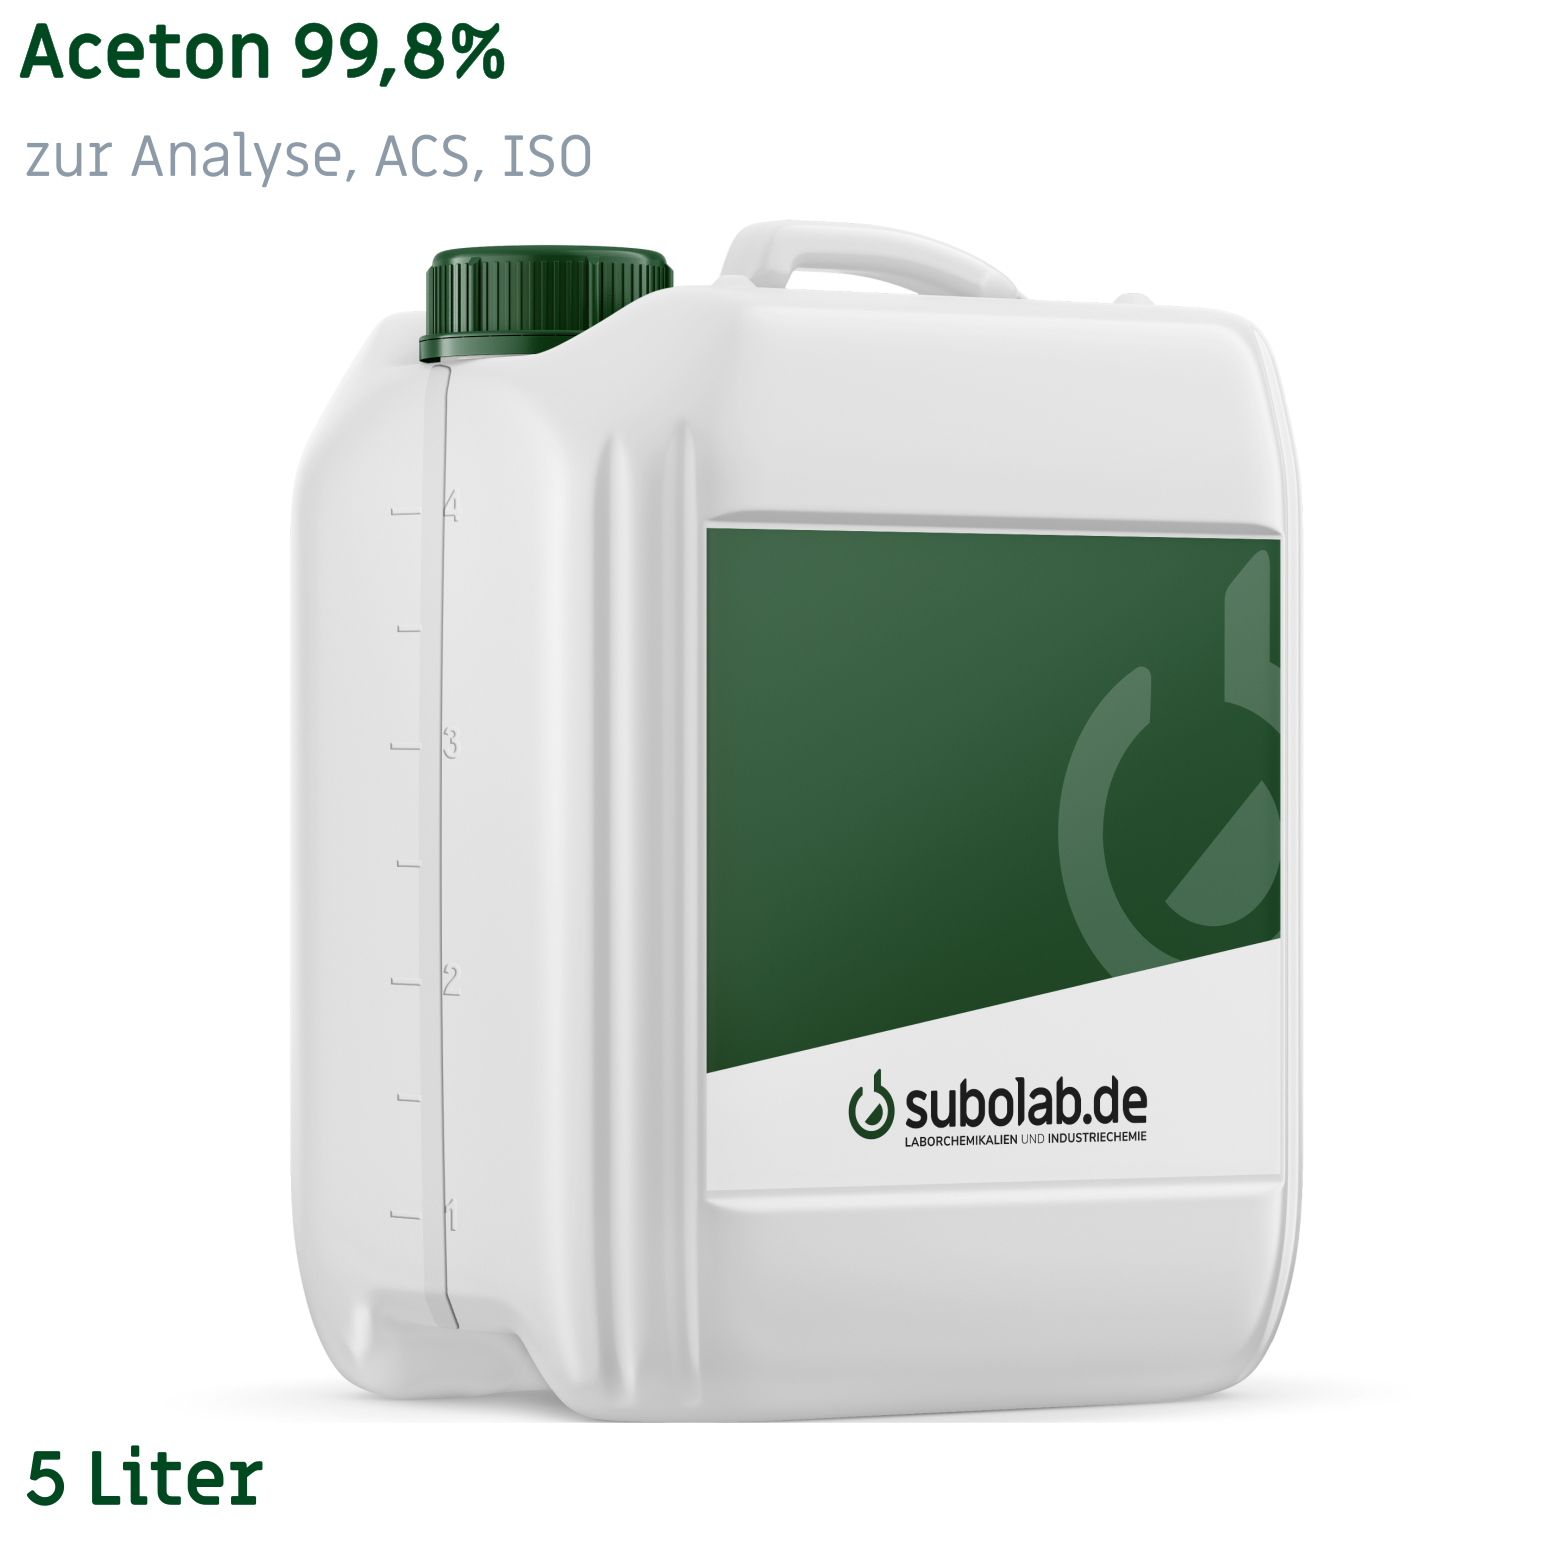 Bild von Aceton 99,8% zur Analyse, ACS, ISO (5 Liter)